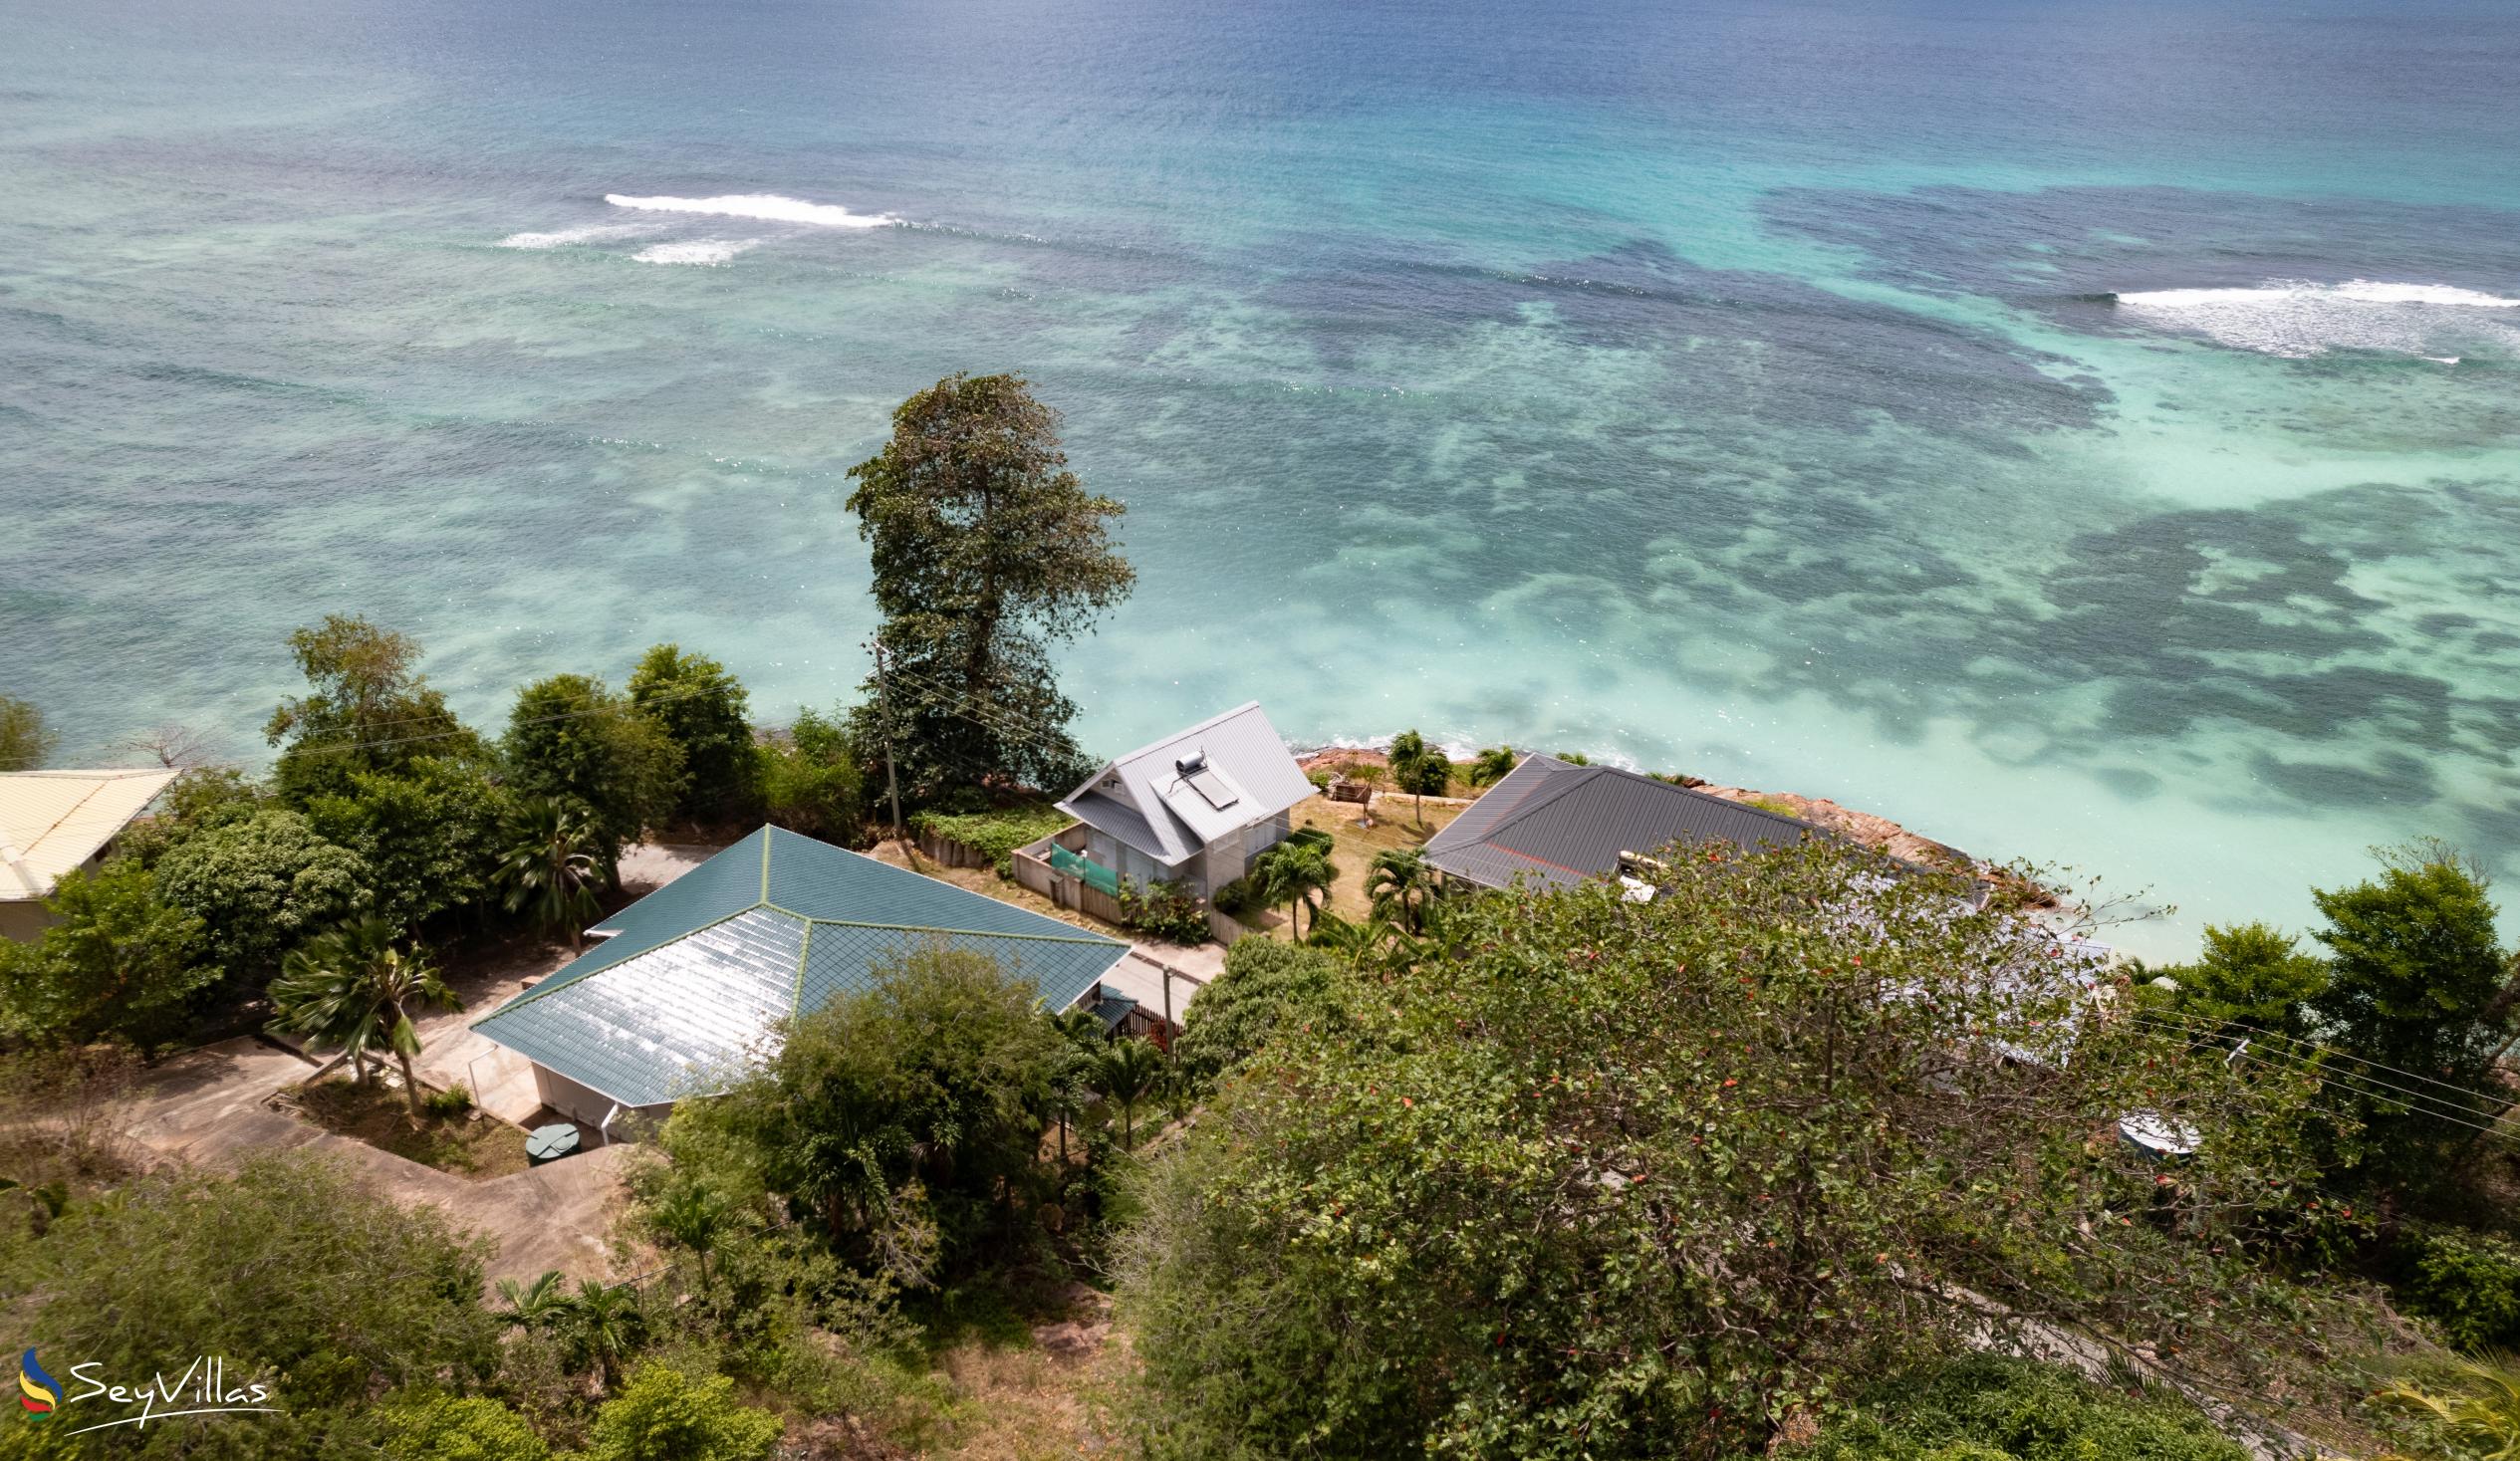 Foto 19: Villa Anse La Blague - Aussenbereich - Praslin (Seychellen)